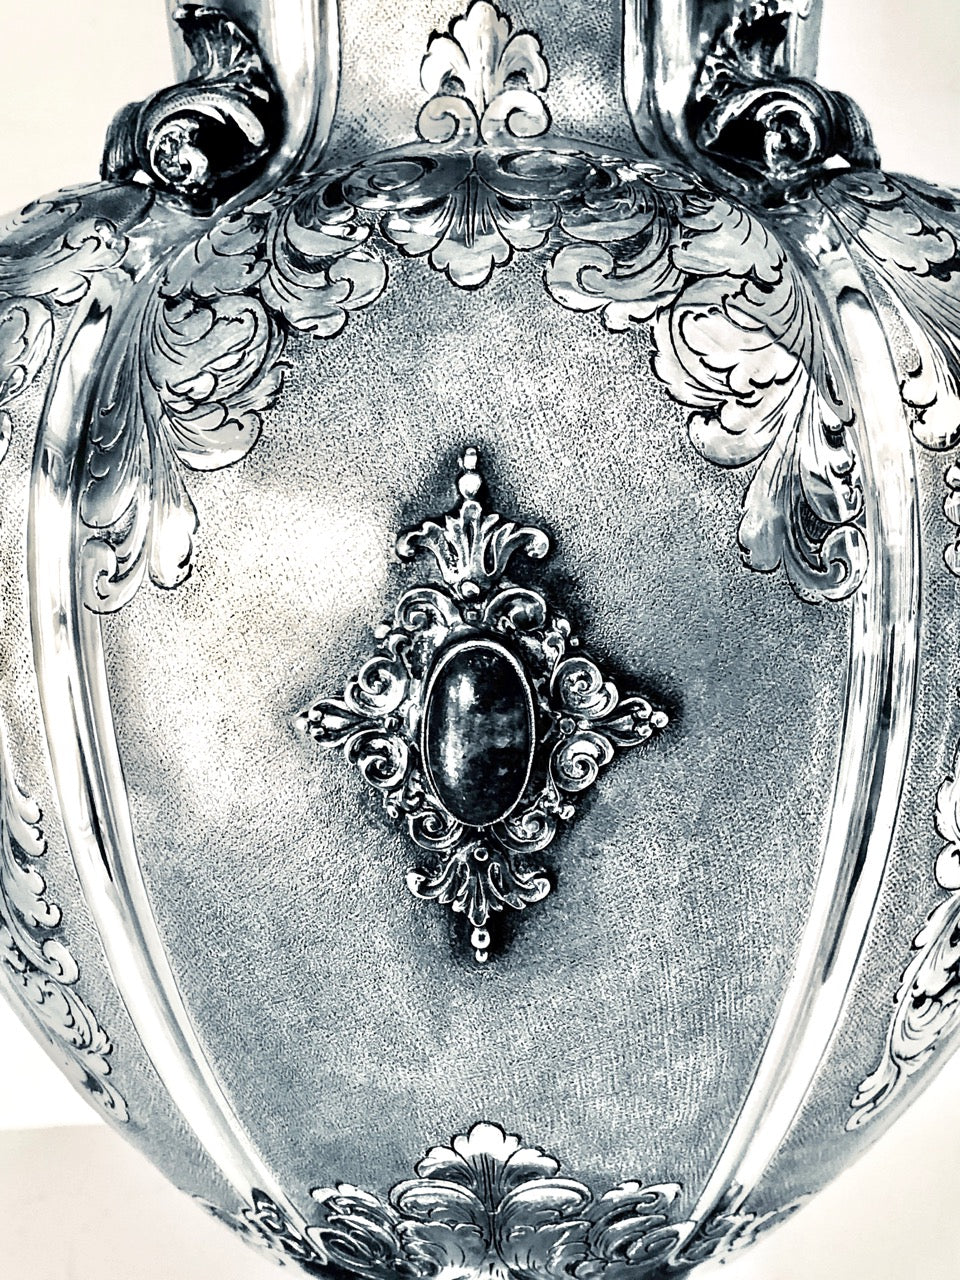 Vaso argento 800, usato con pietre Lapis ai lati (Cabouschon) anni 50 circa.